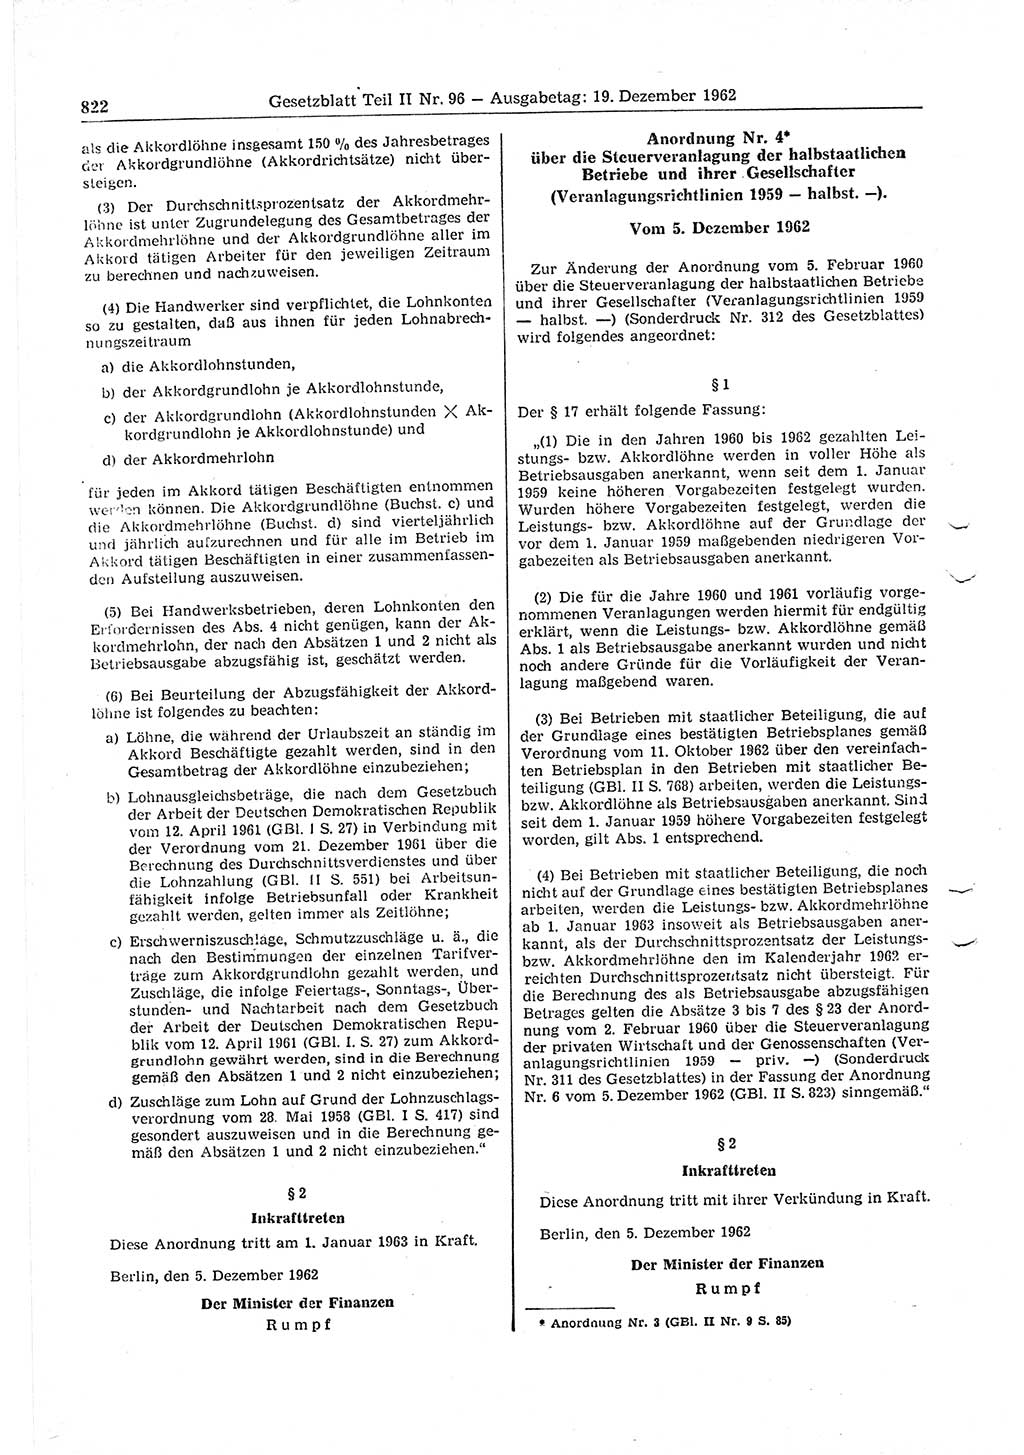 Gesetzblatt (GBl.) der Deutschen Demokratischen Republik (DDR) Teil ⅠⅠ 1962, Seite 822 (GBl. DDR ⅠⅠ 1962, S. 822)